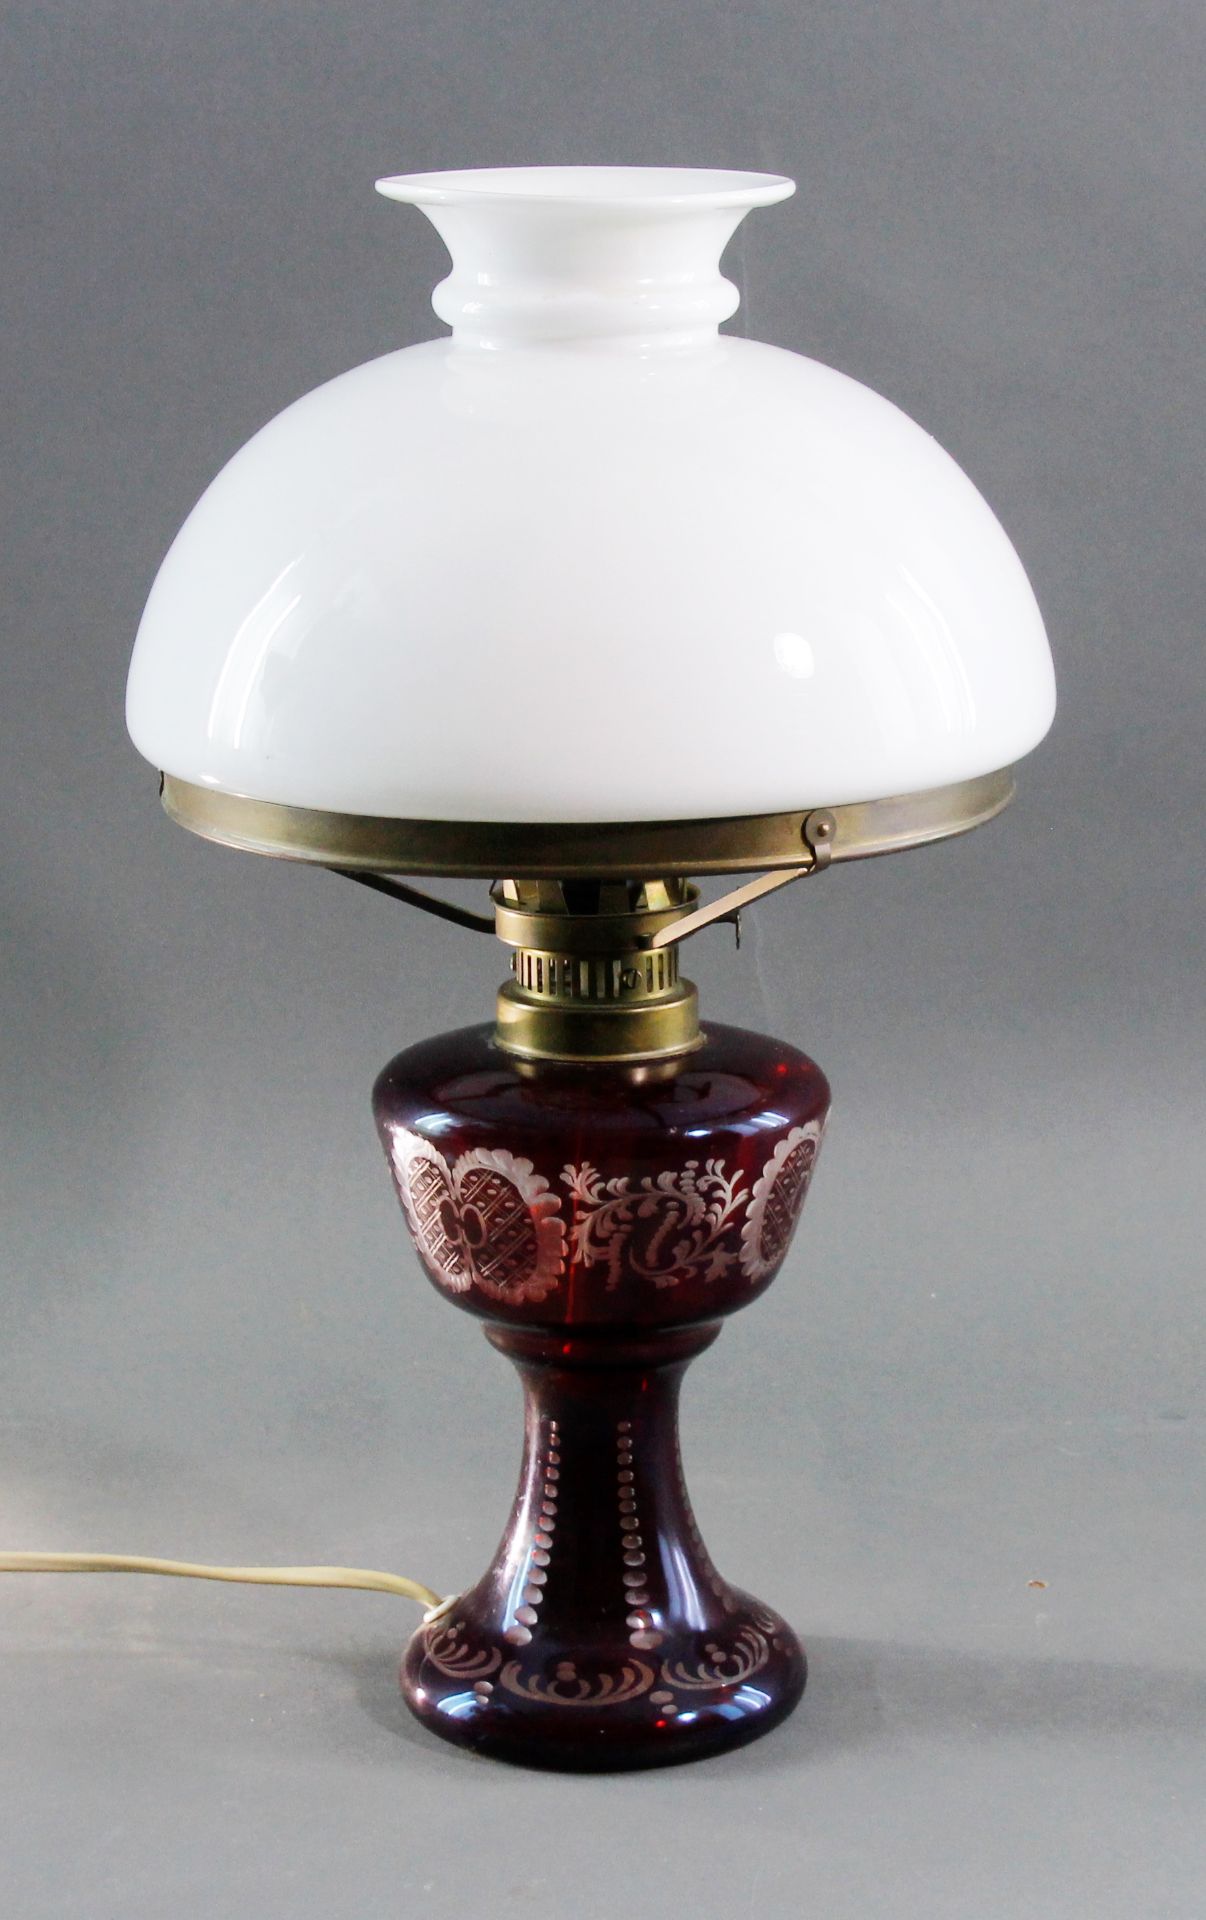 Petroleum Tischlampe mit Rubin-Glas-Fuß, um 1900